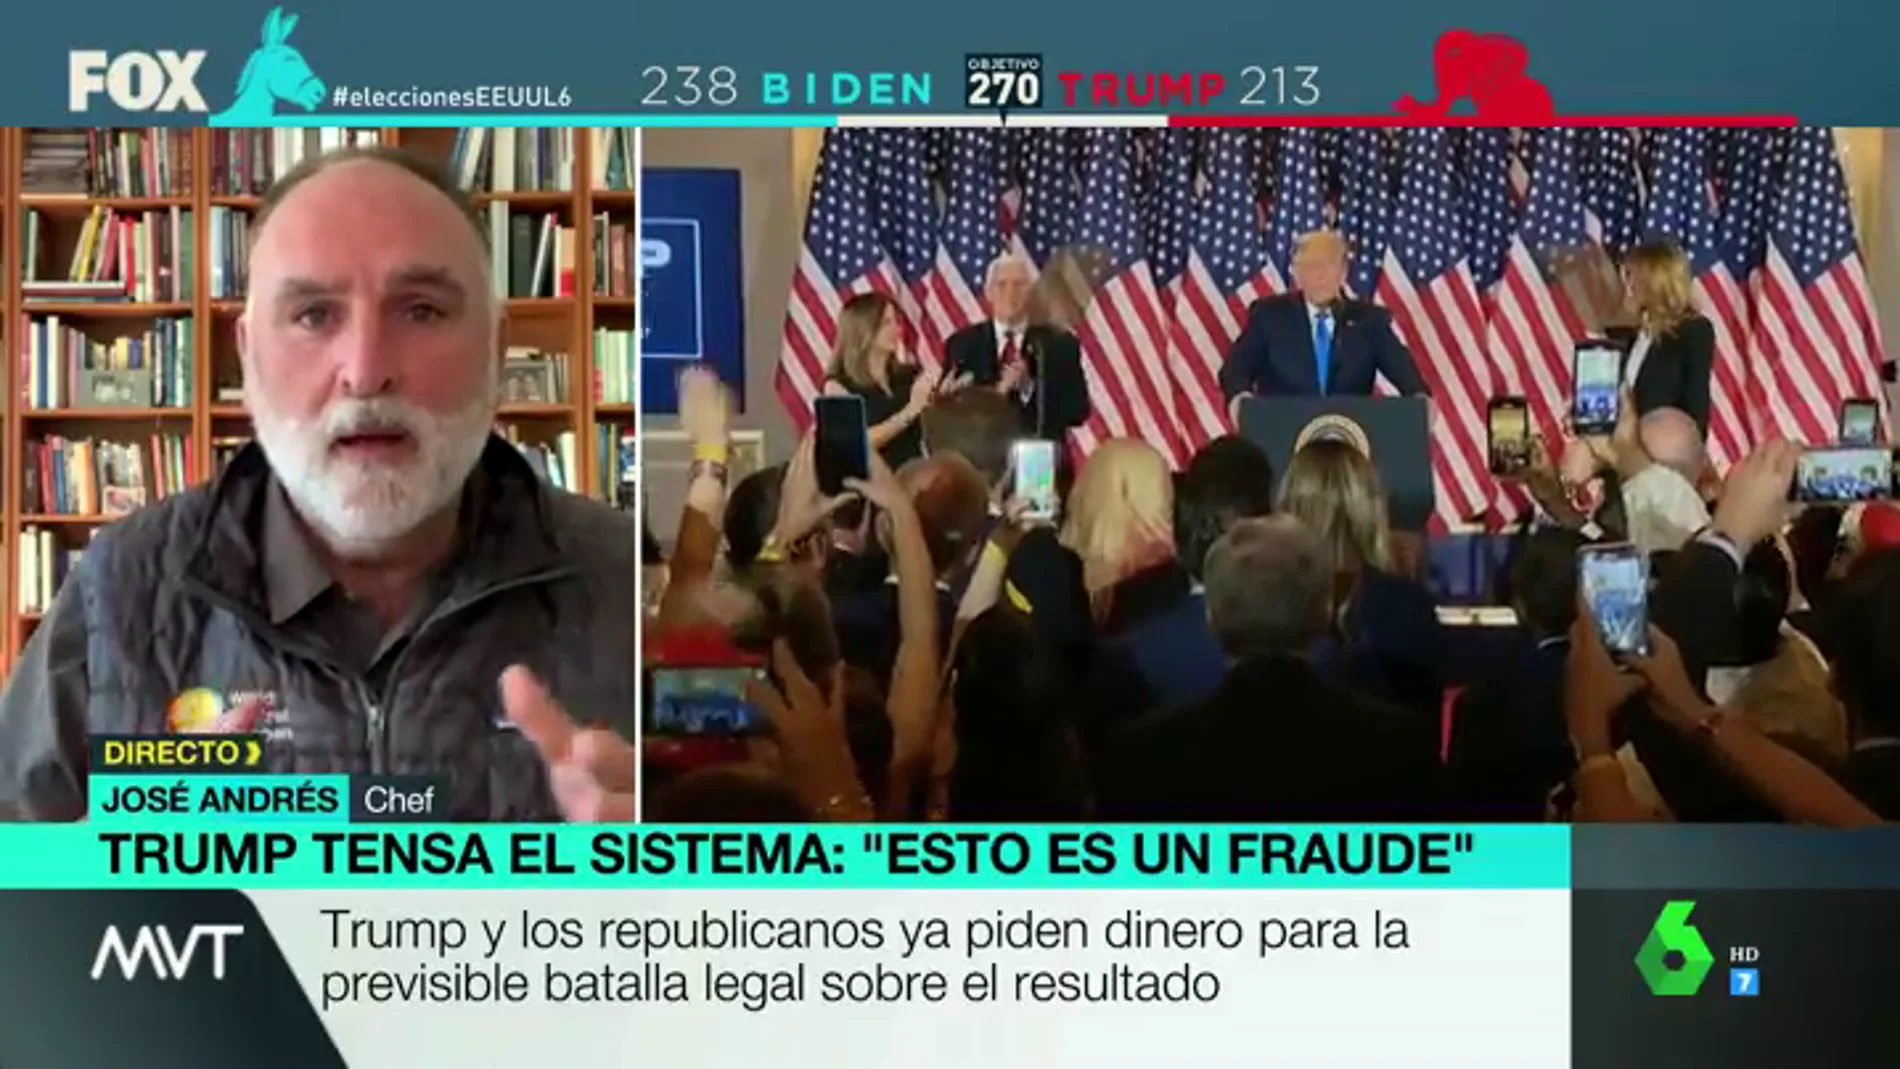 El chef José Andrés: "Desde que Trump llegó al poder dice que el sistema democrático es corrupto"